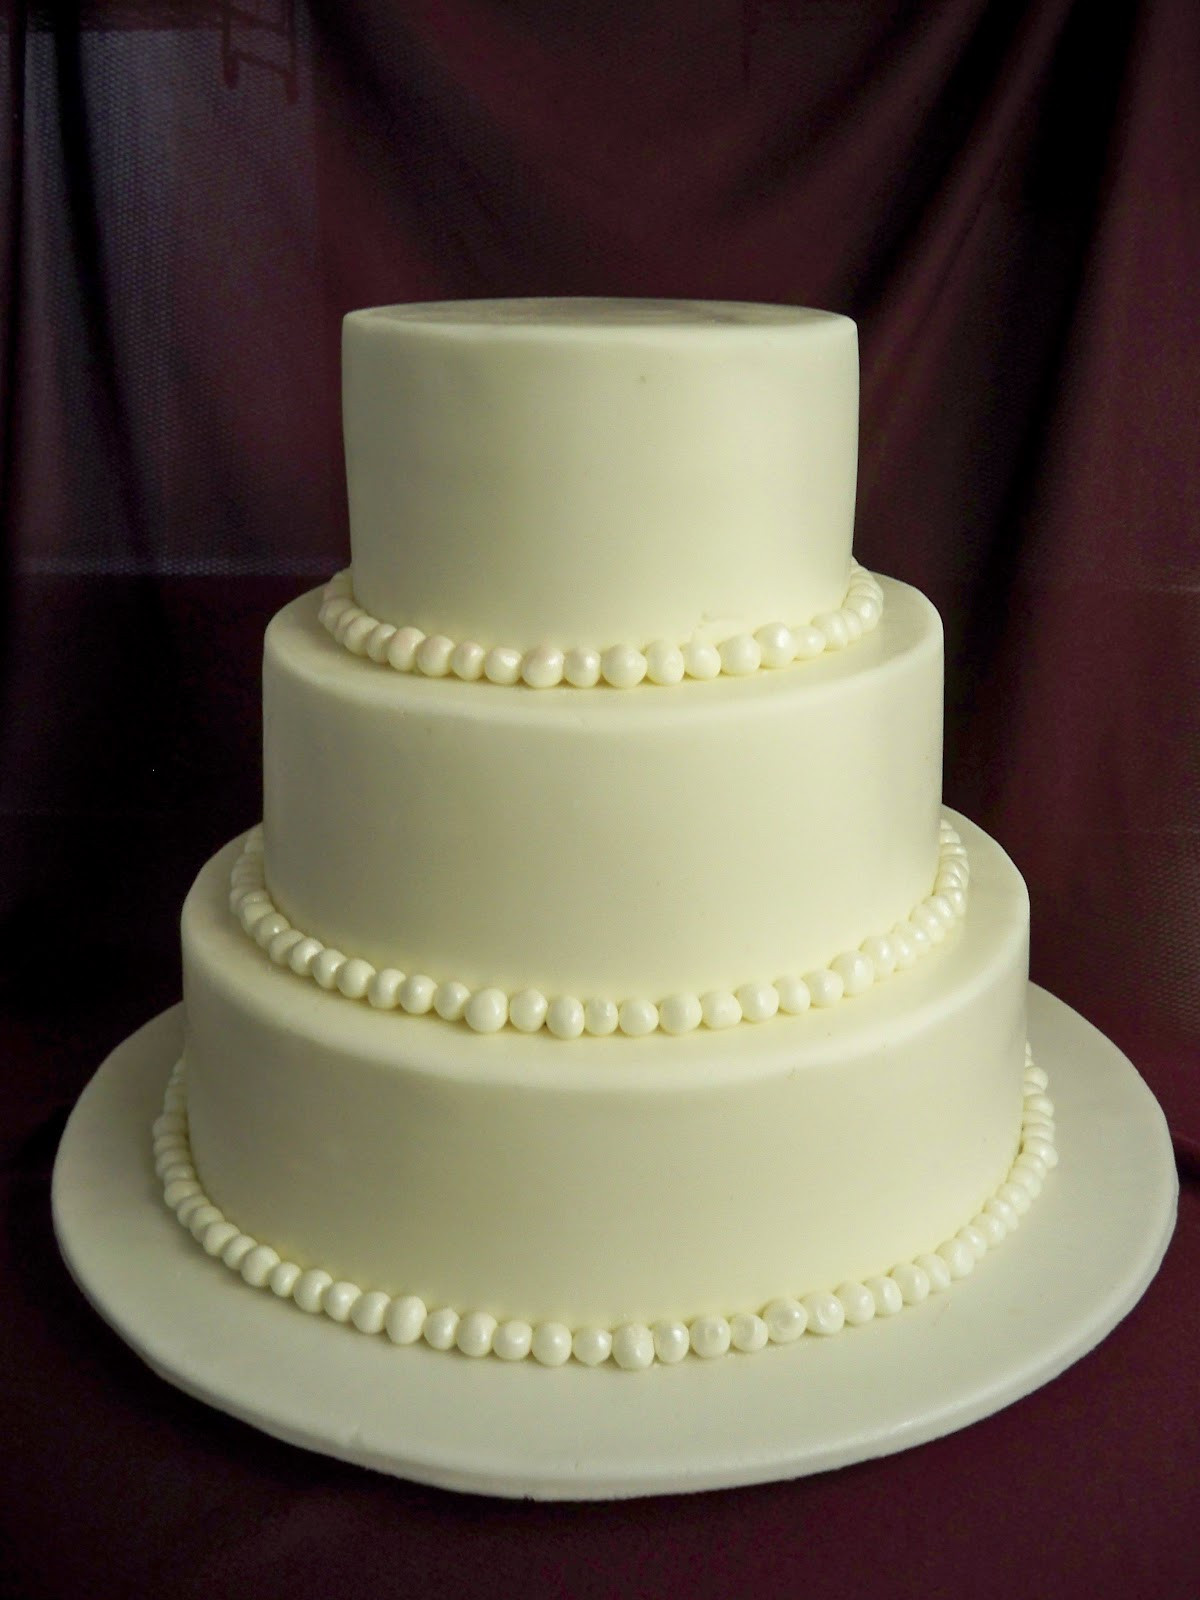 3 Tier Wedding Cakes Pictures
 3 Tier Wedding Cake Tyler Living